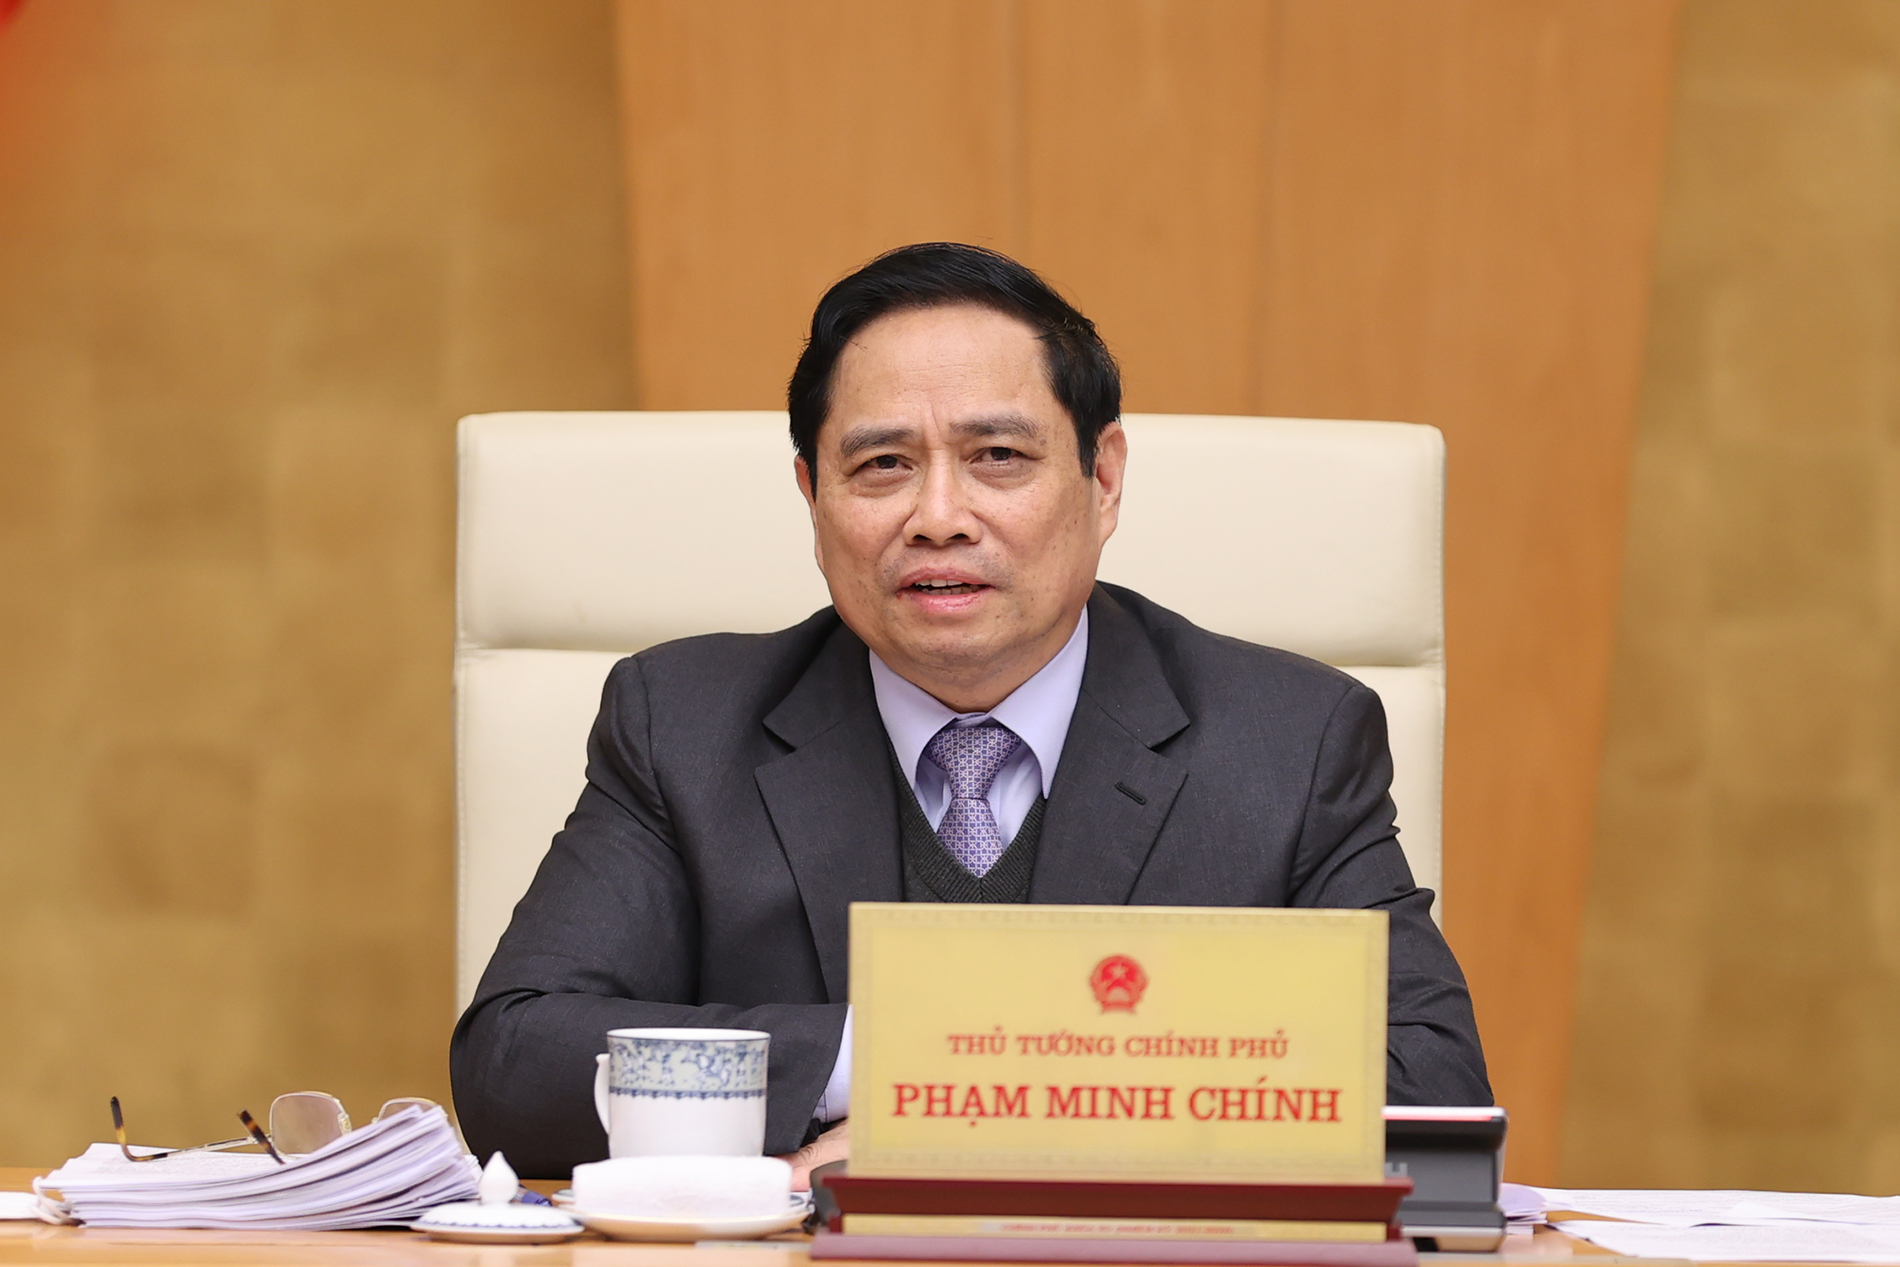 Loạt ảnh: Thủ tướng chủ trì Phiên họp chính phủ chuyên đề về xây dựng pháp luật - Ảnh 4.